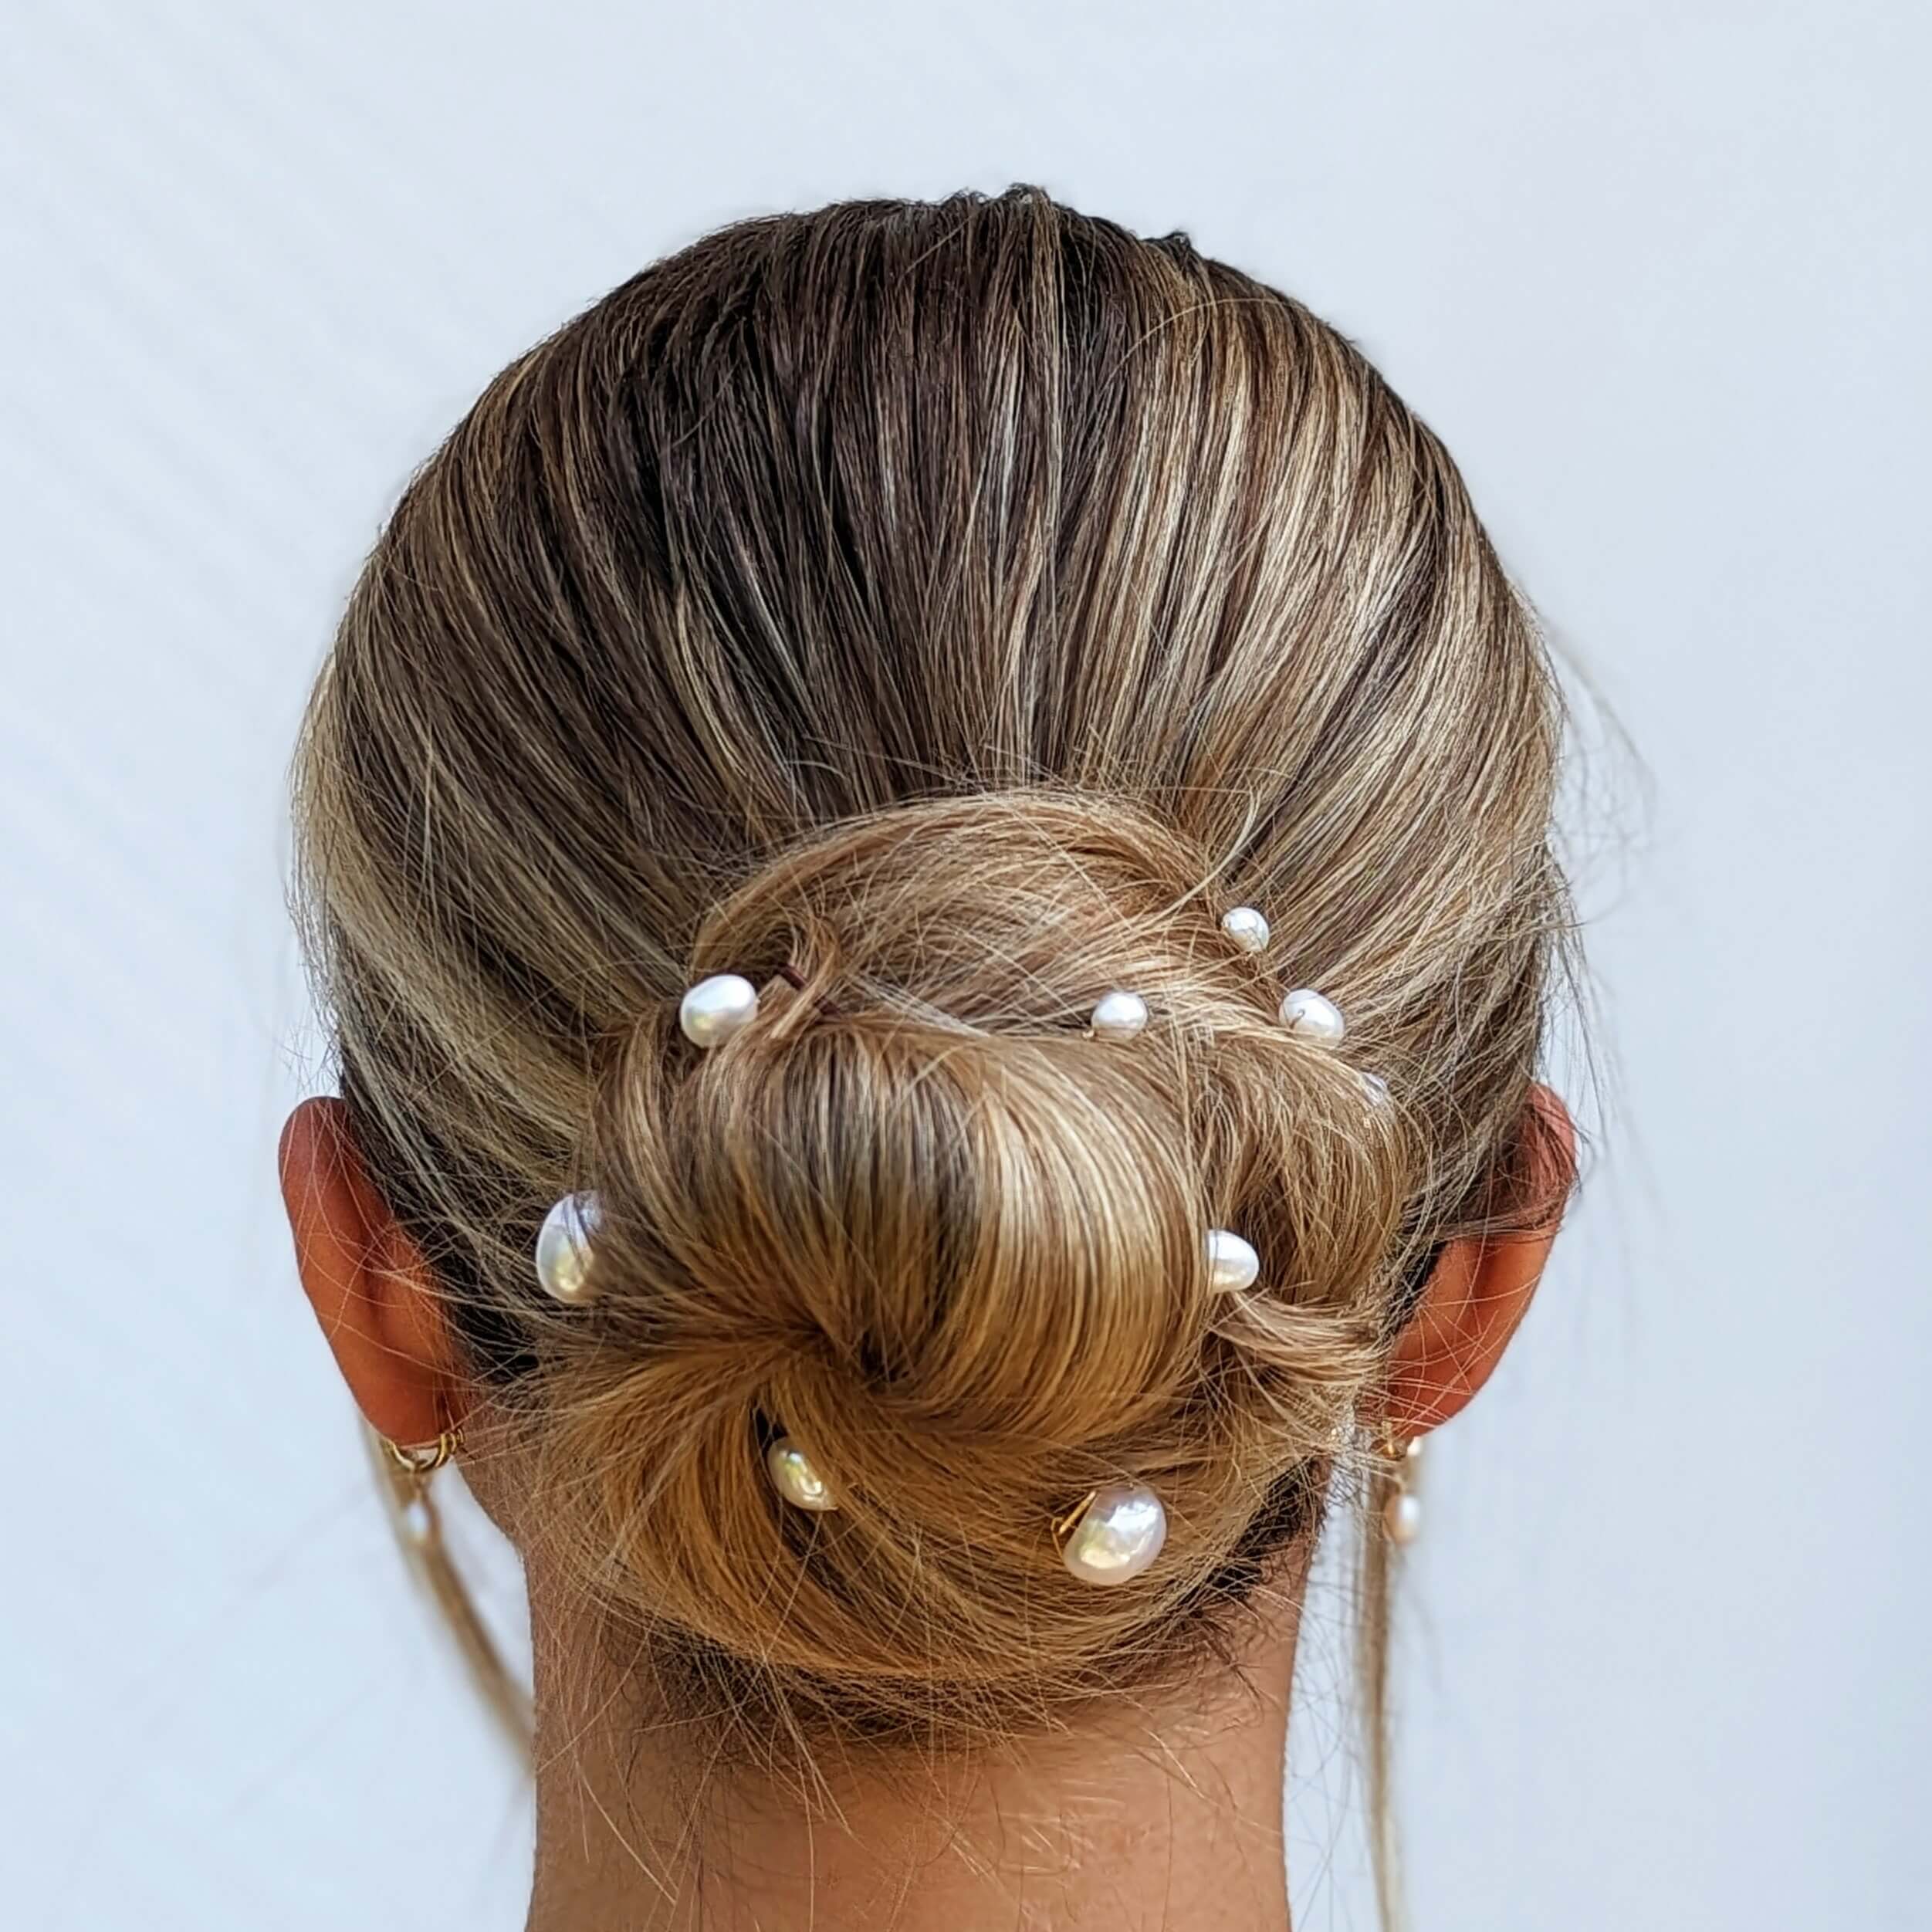 freshwater pearl hair pin set in hair on bride